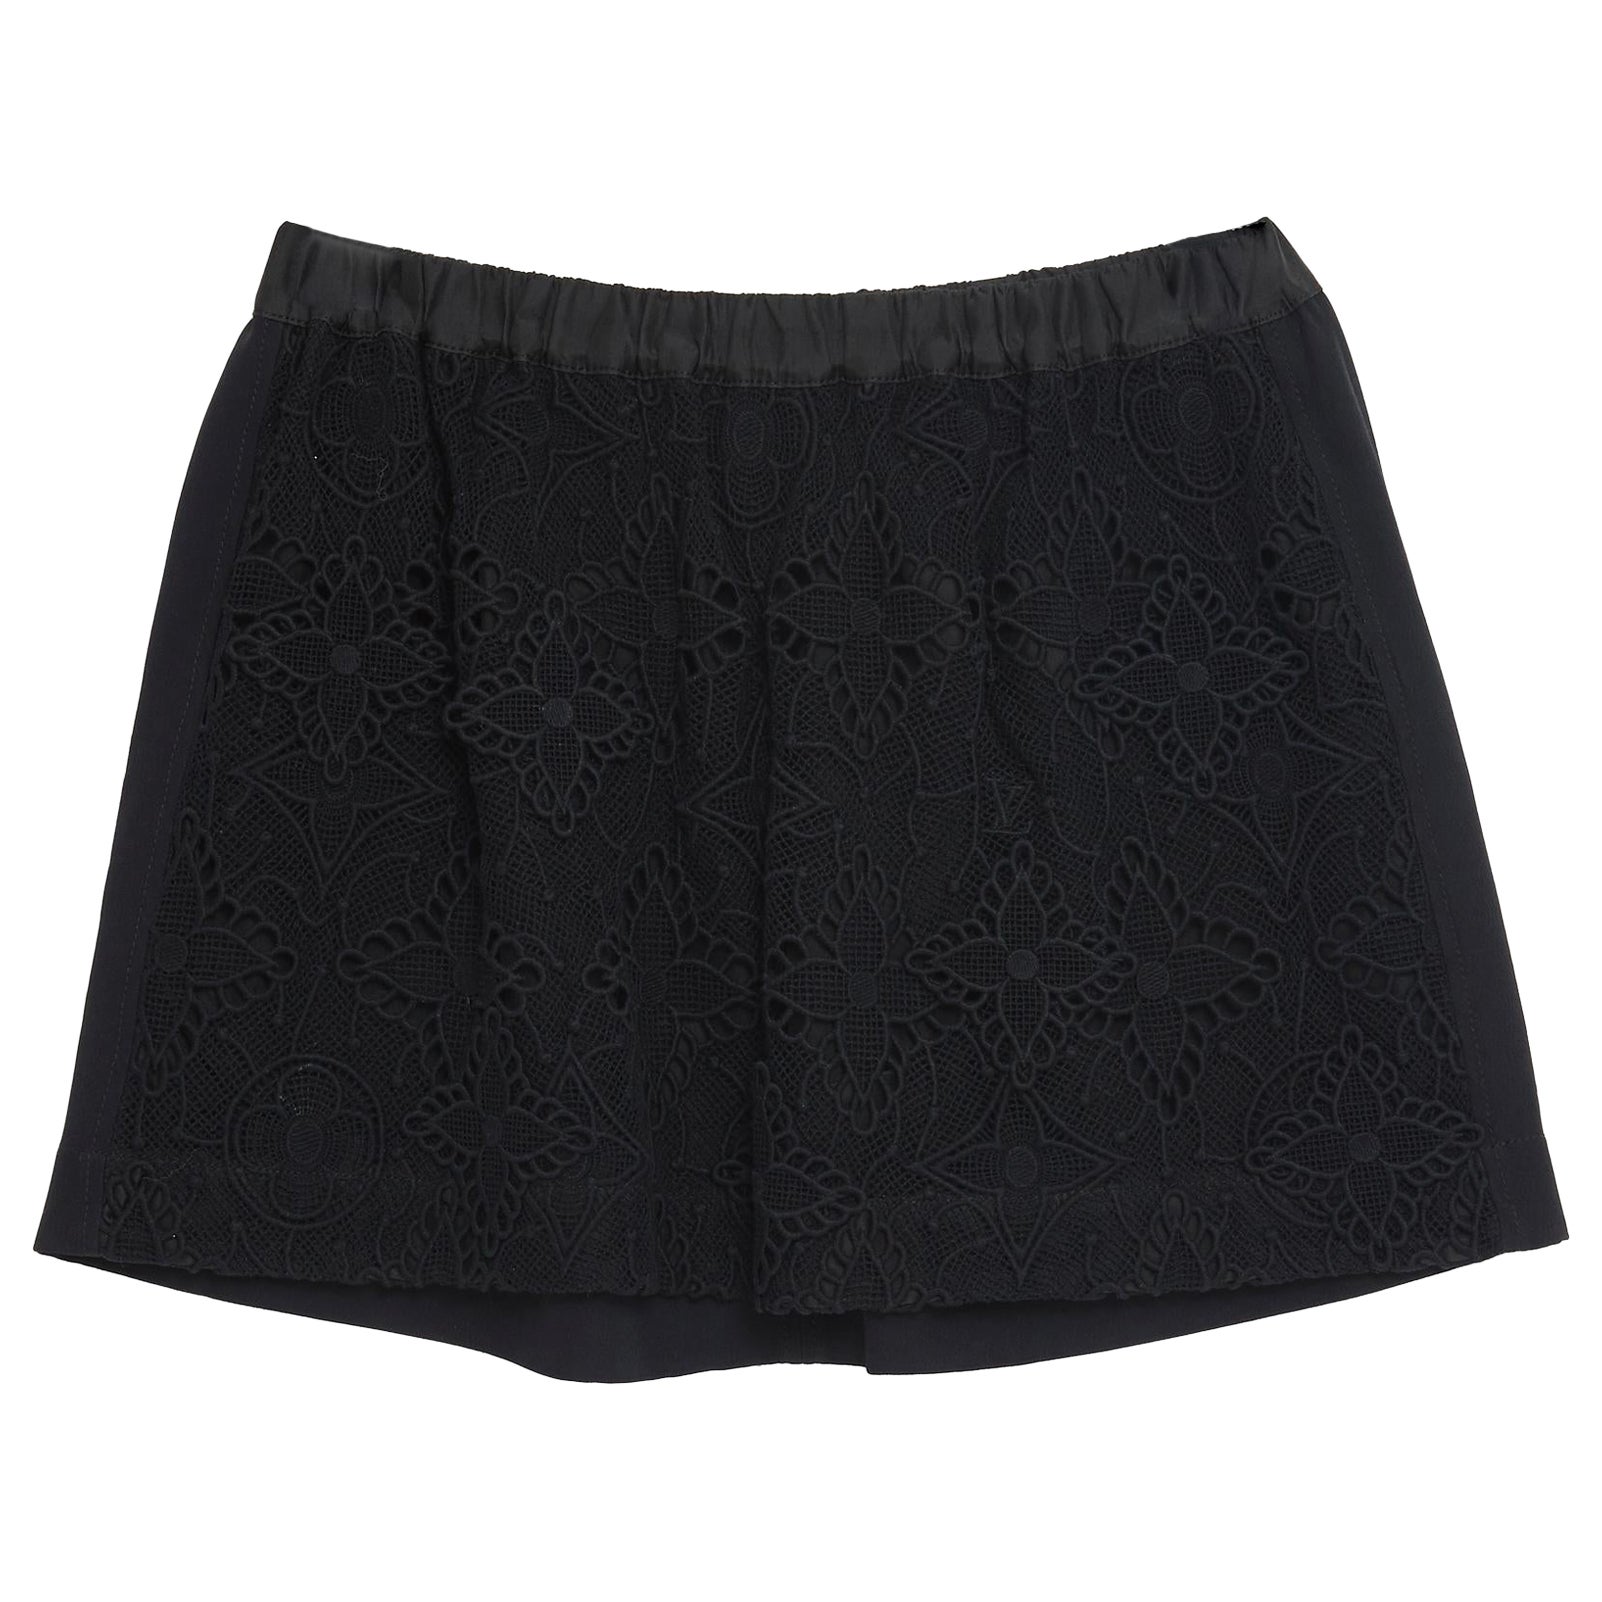 FR38 Skirt Short Black Icons LV For Sale